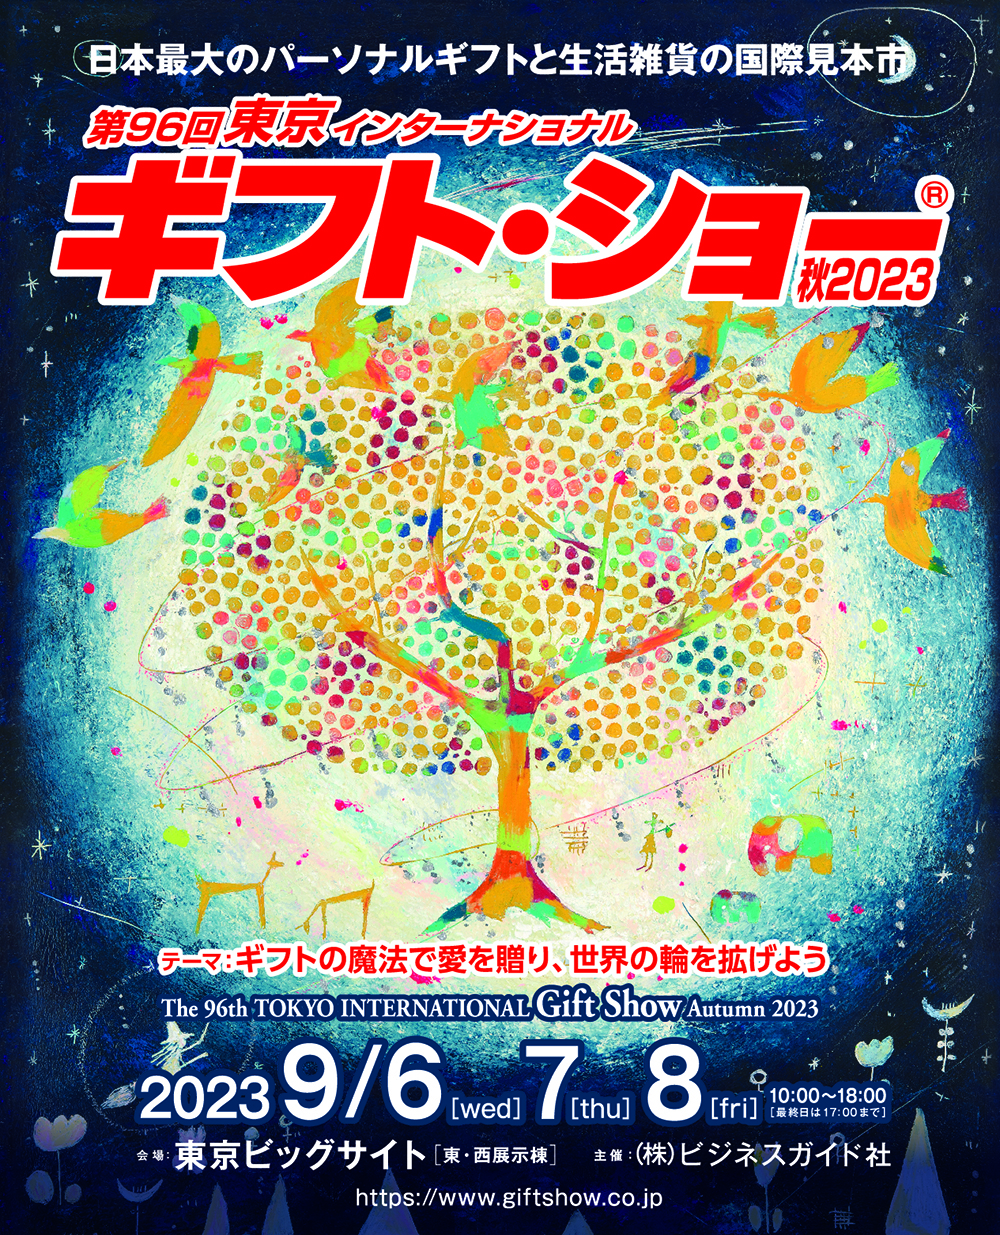 【終了】東京ビッグサイトで開催される「第96回ギフト・ショー秋2023」「manicolle tokyo」にフレンズヒルが出展します。